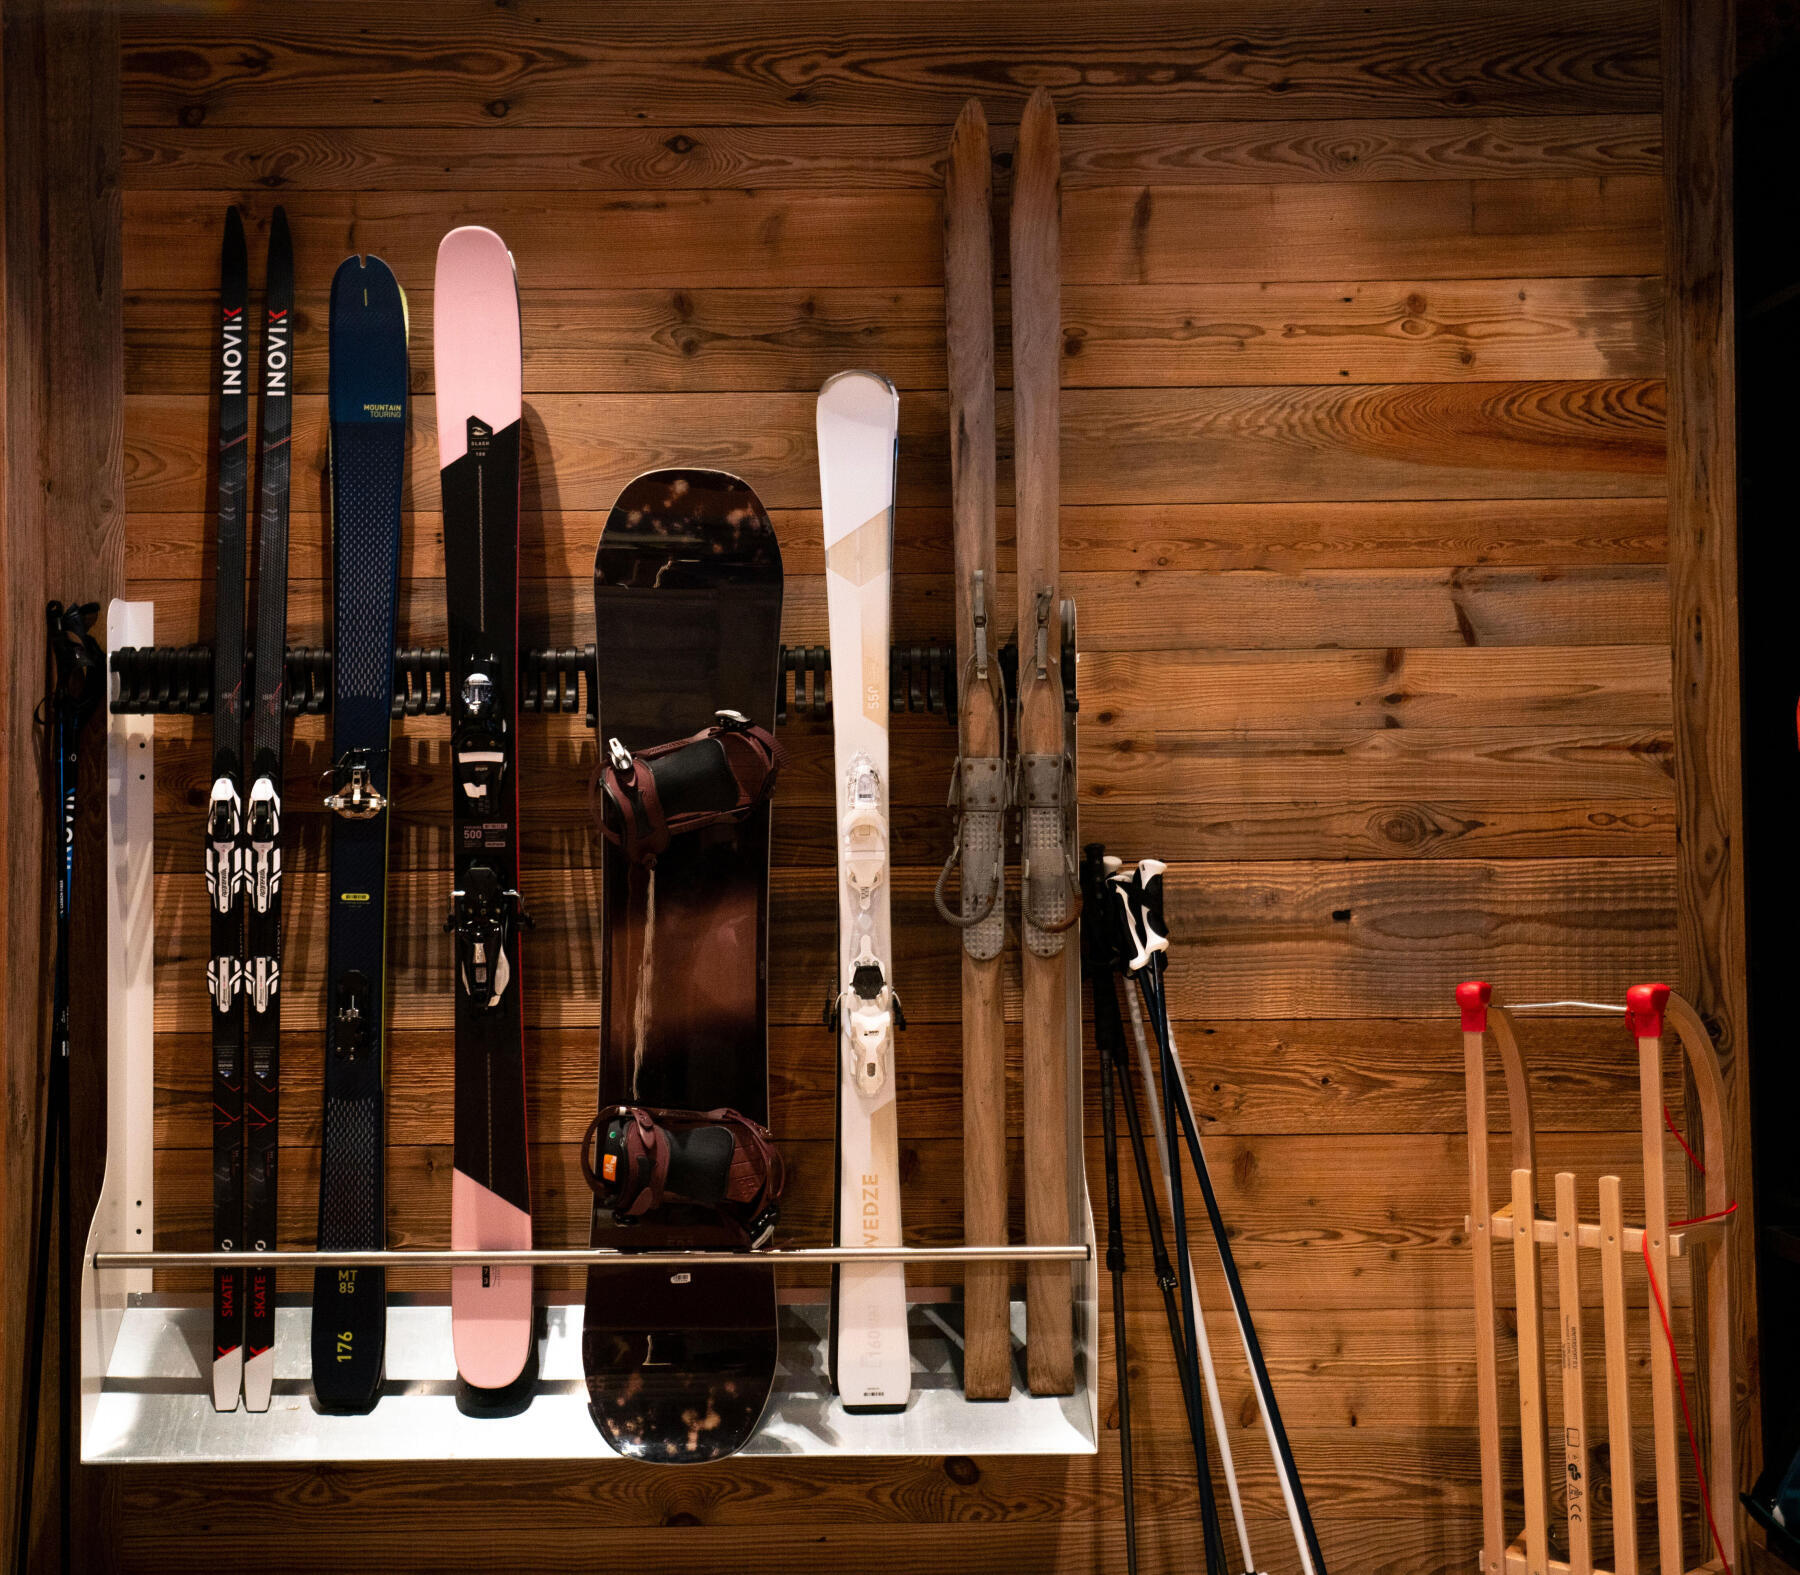 Manutenção e reparação dos skis